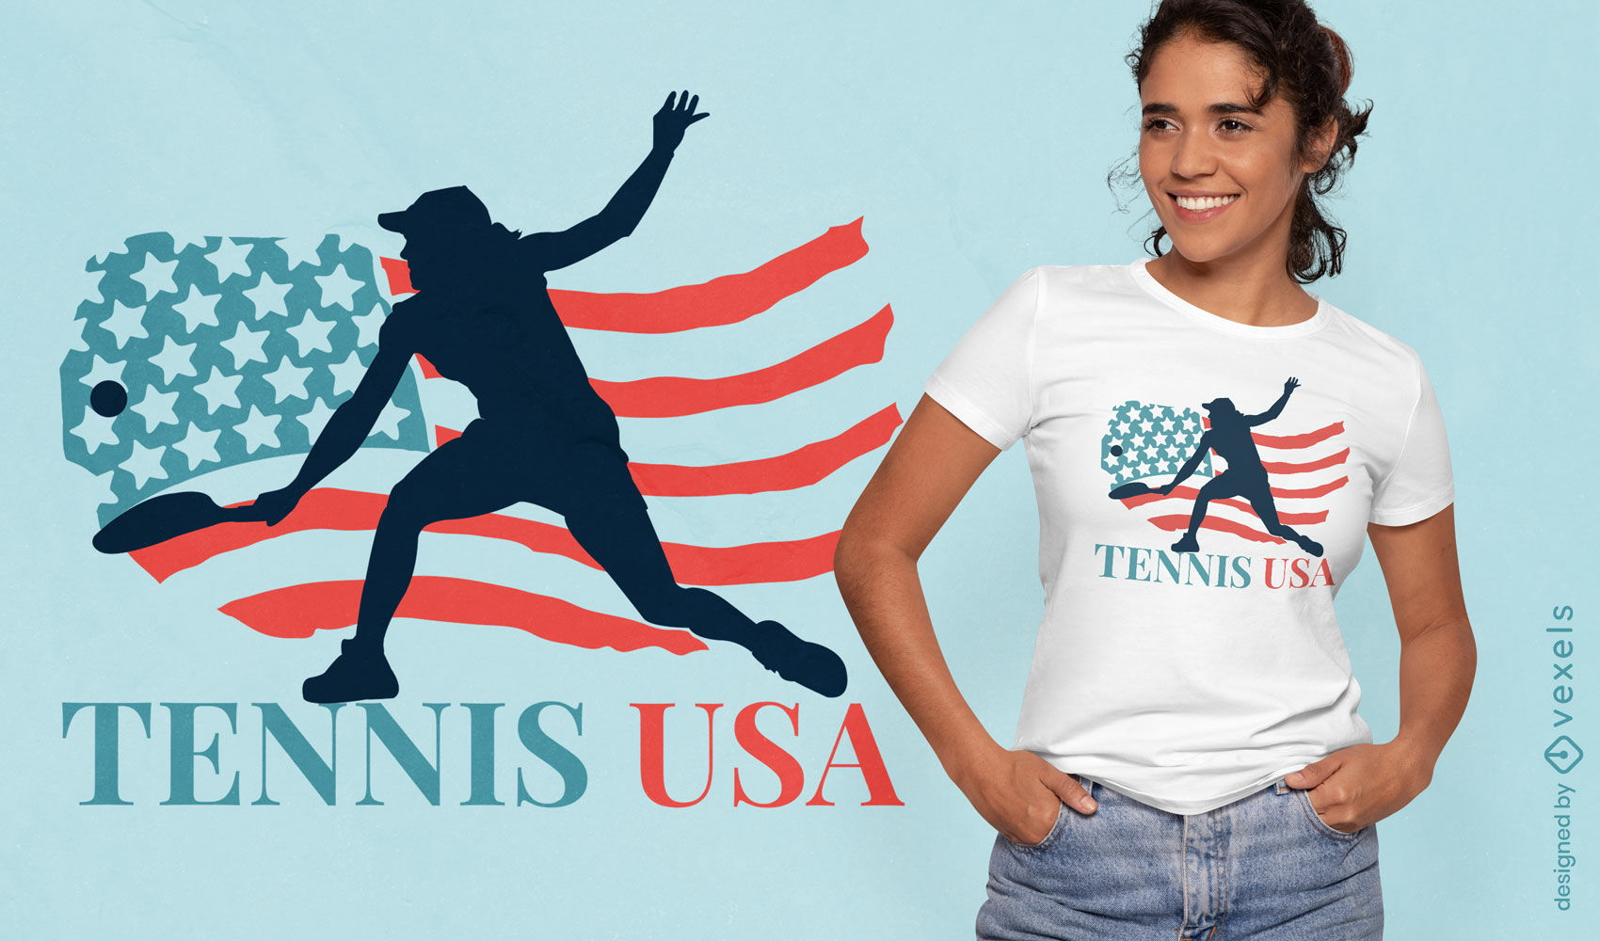 Tennis-USA-T-Shirt-Design